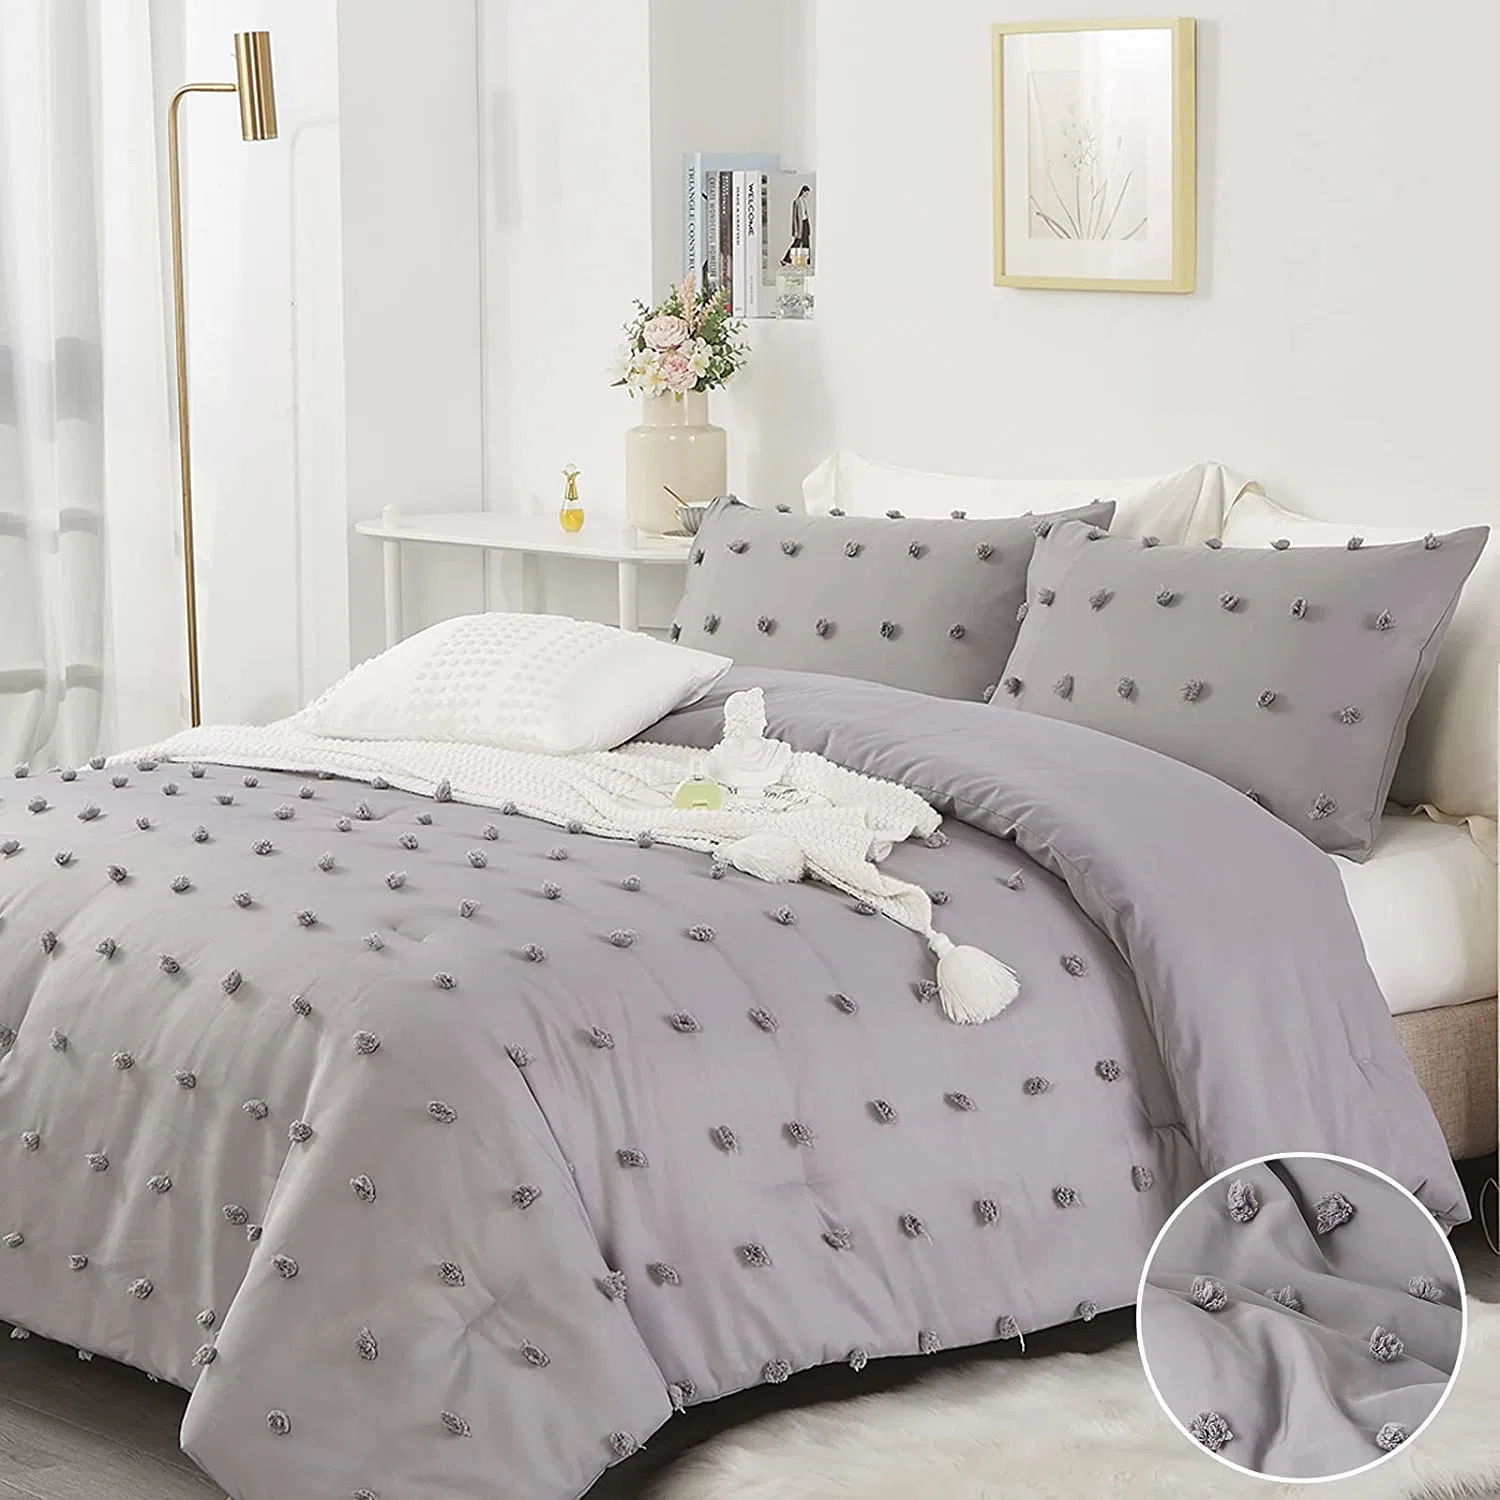 Home Hotel Bed Warm Cotton вышитое пуховое одеяло обложка жаккардовый дизайн Одеяло Комфортер